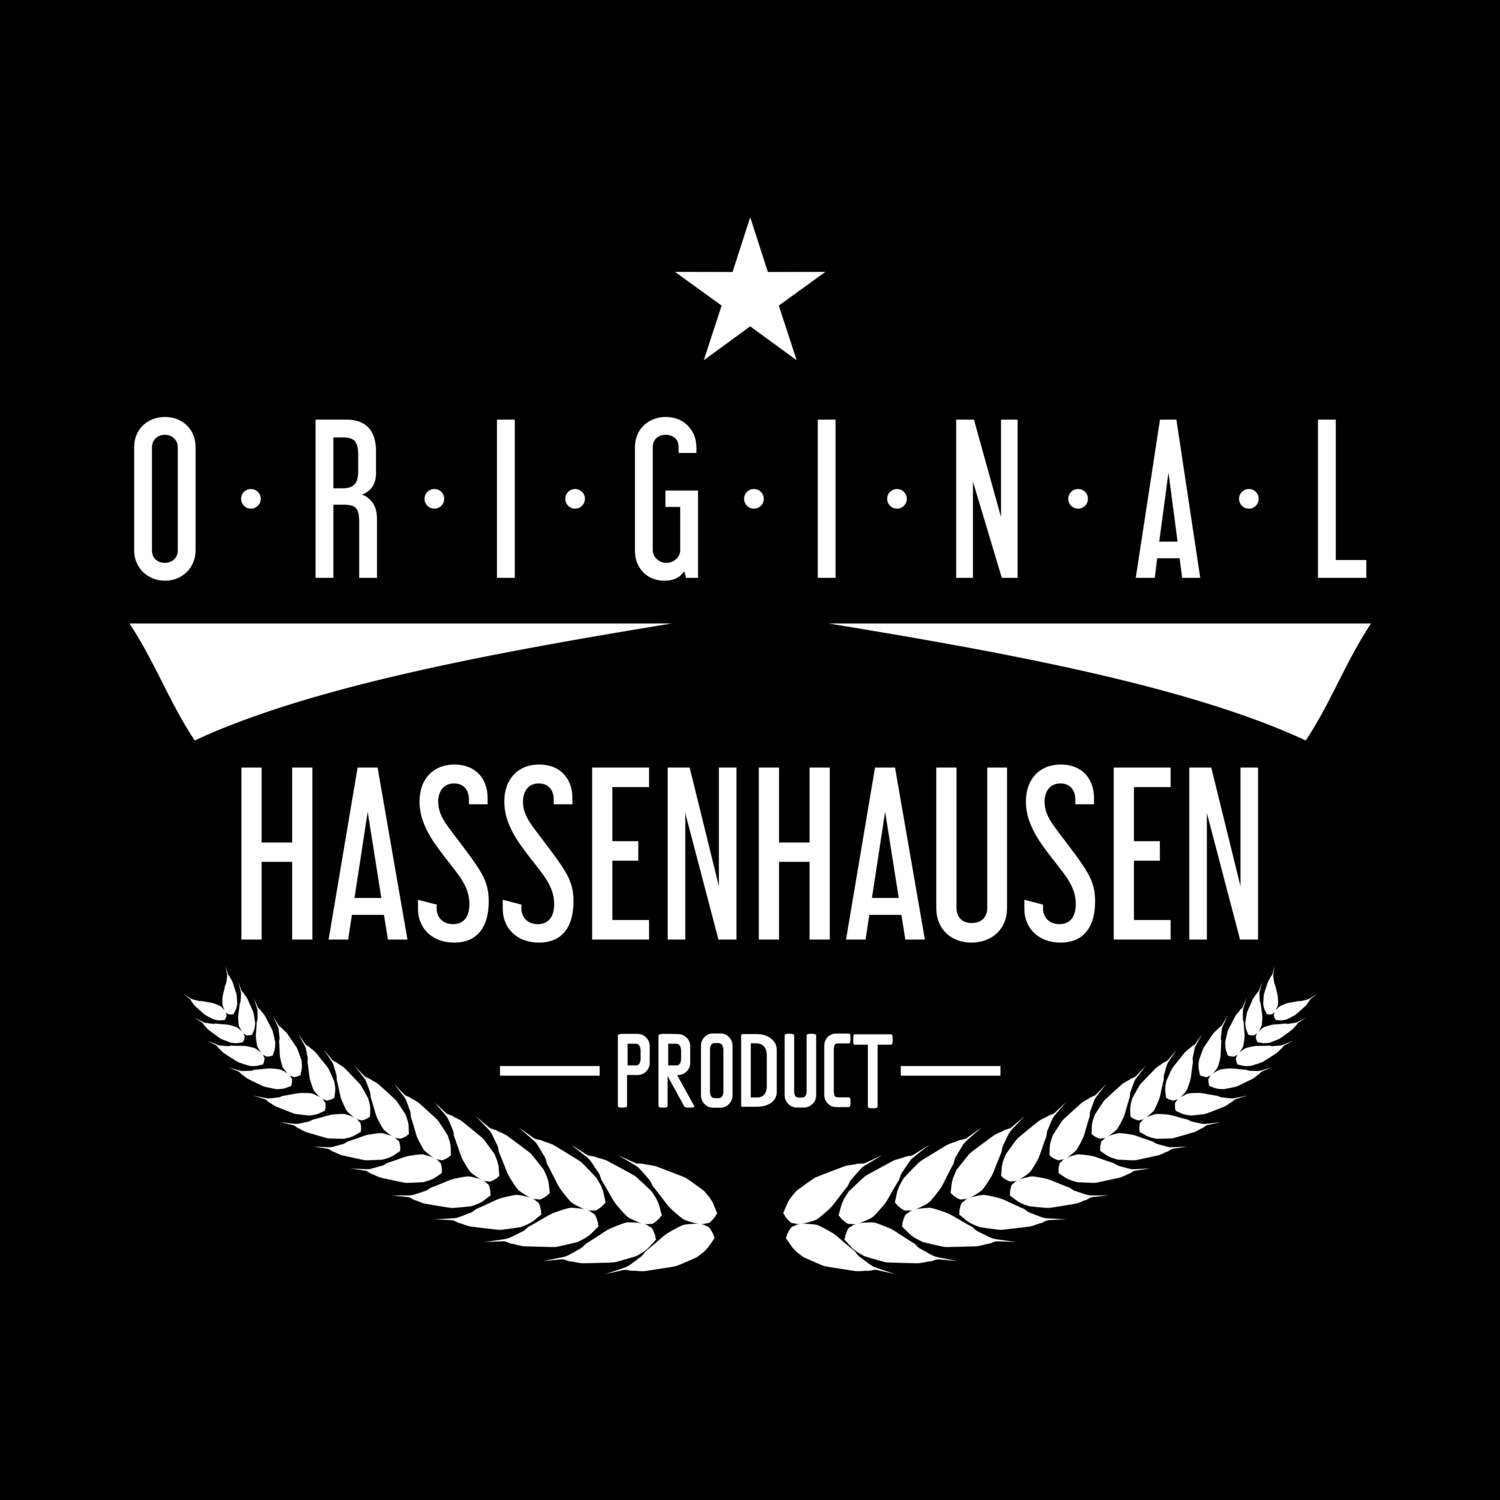 Hassenhausen T-Shirt »Original Product«